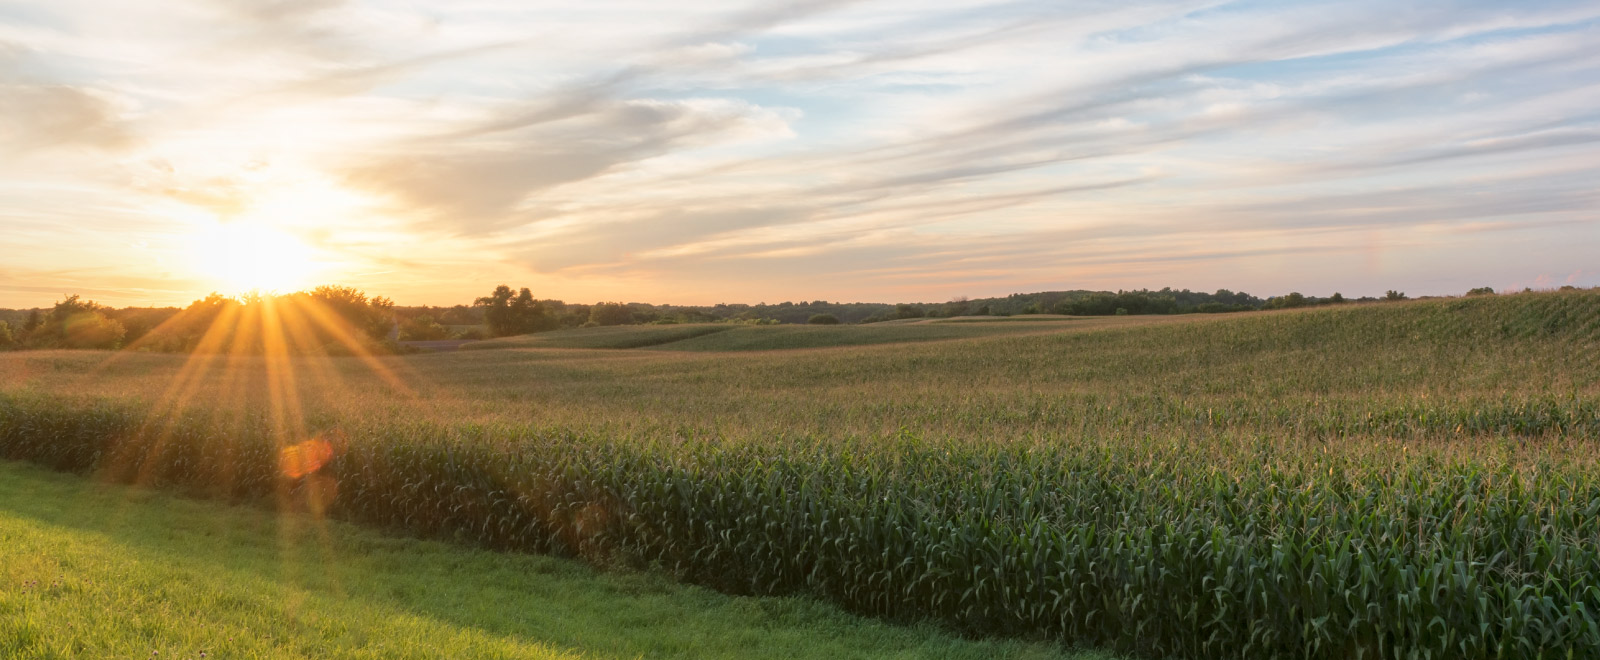 an evening sunset overlooking a corn field